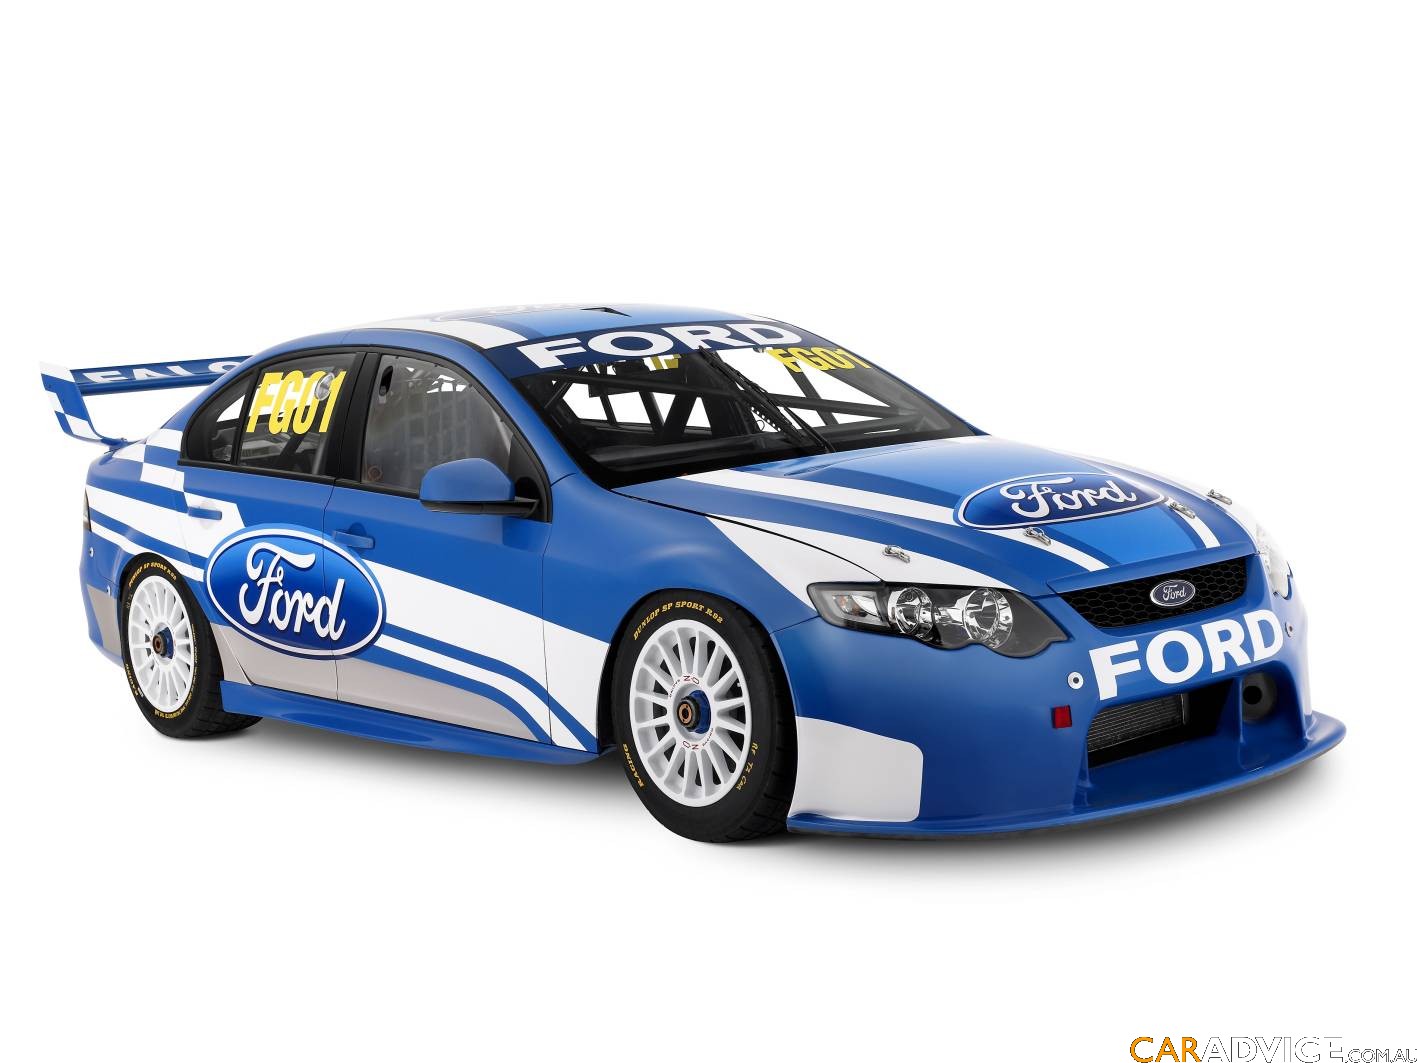 Ford reveals FG01 V8